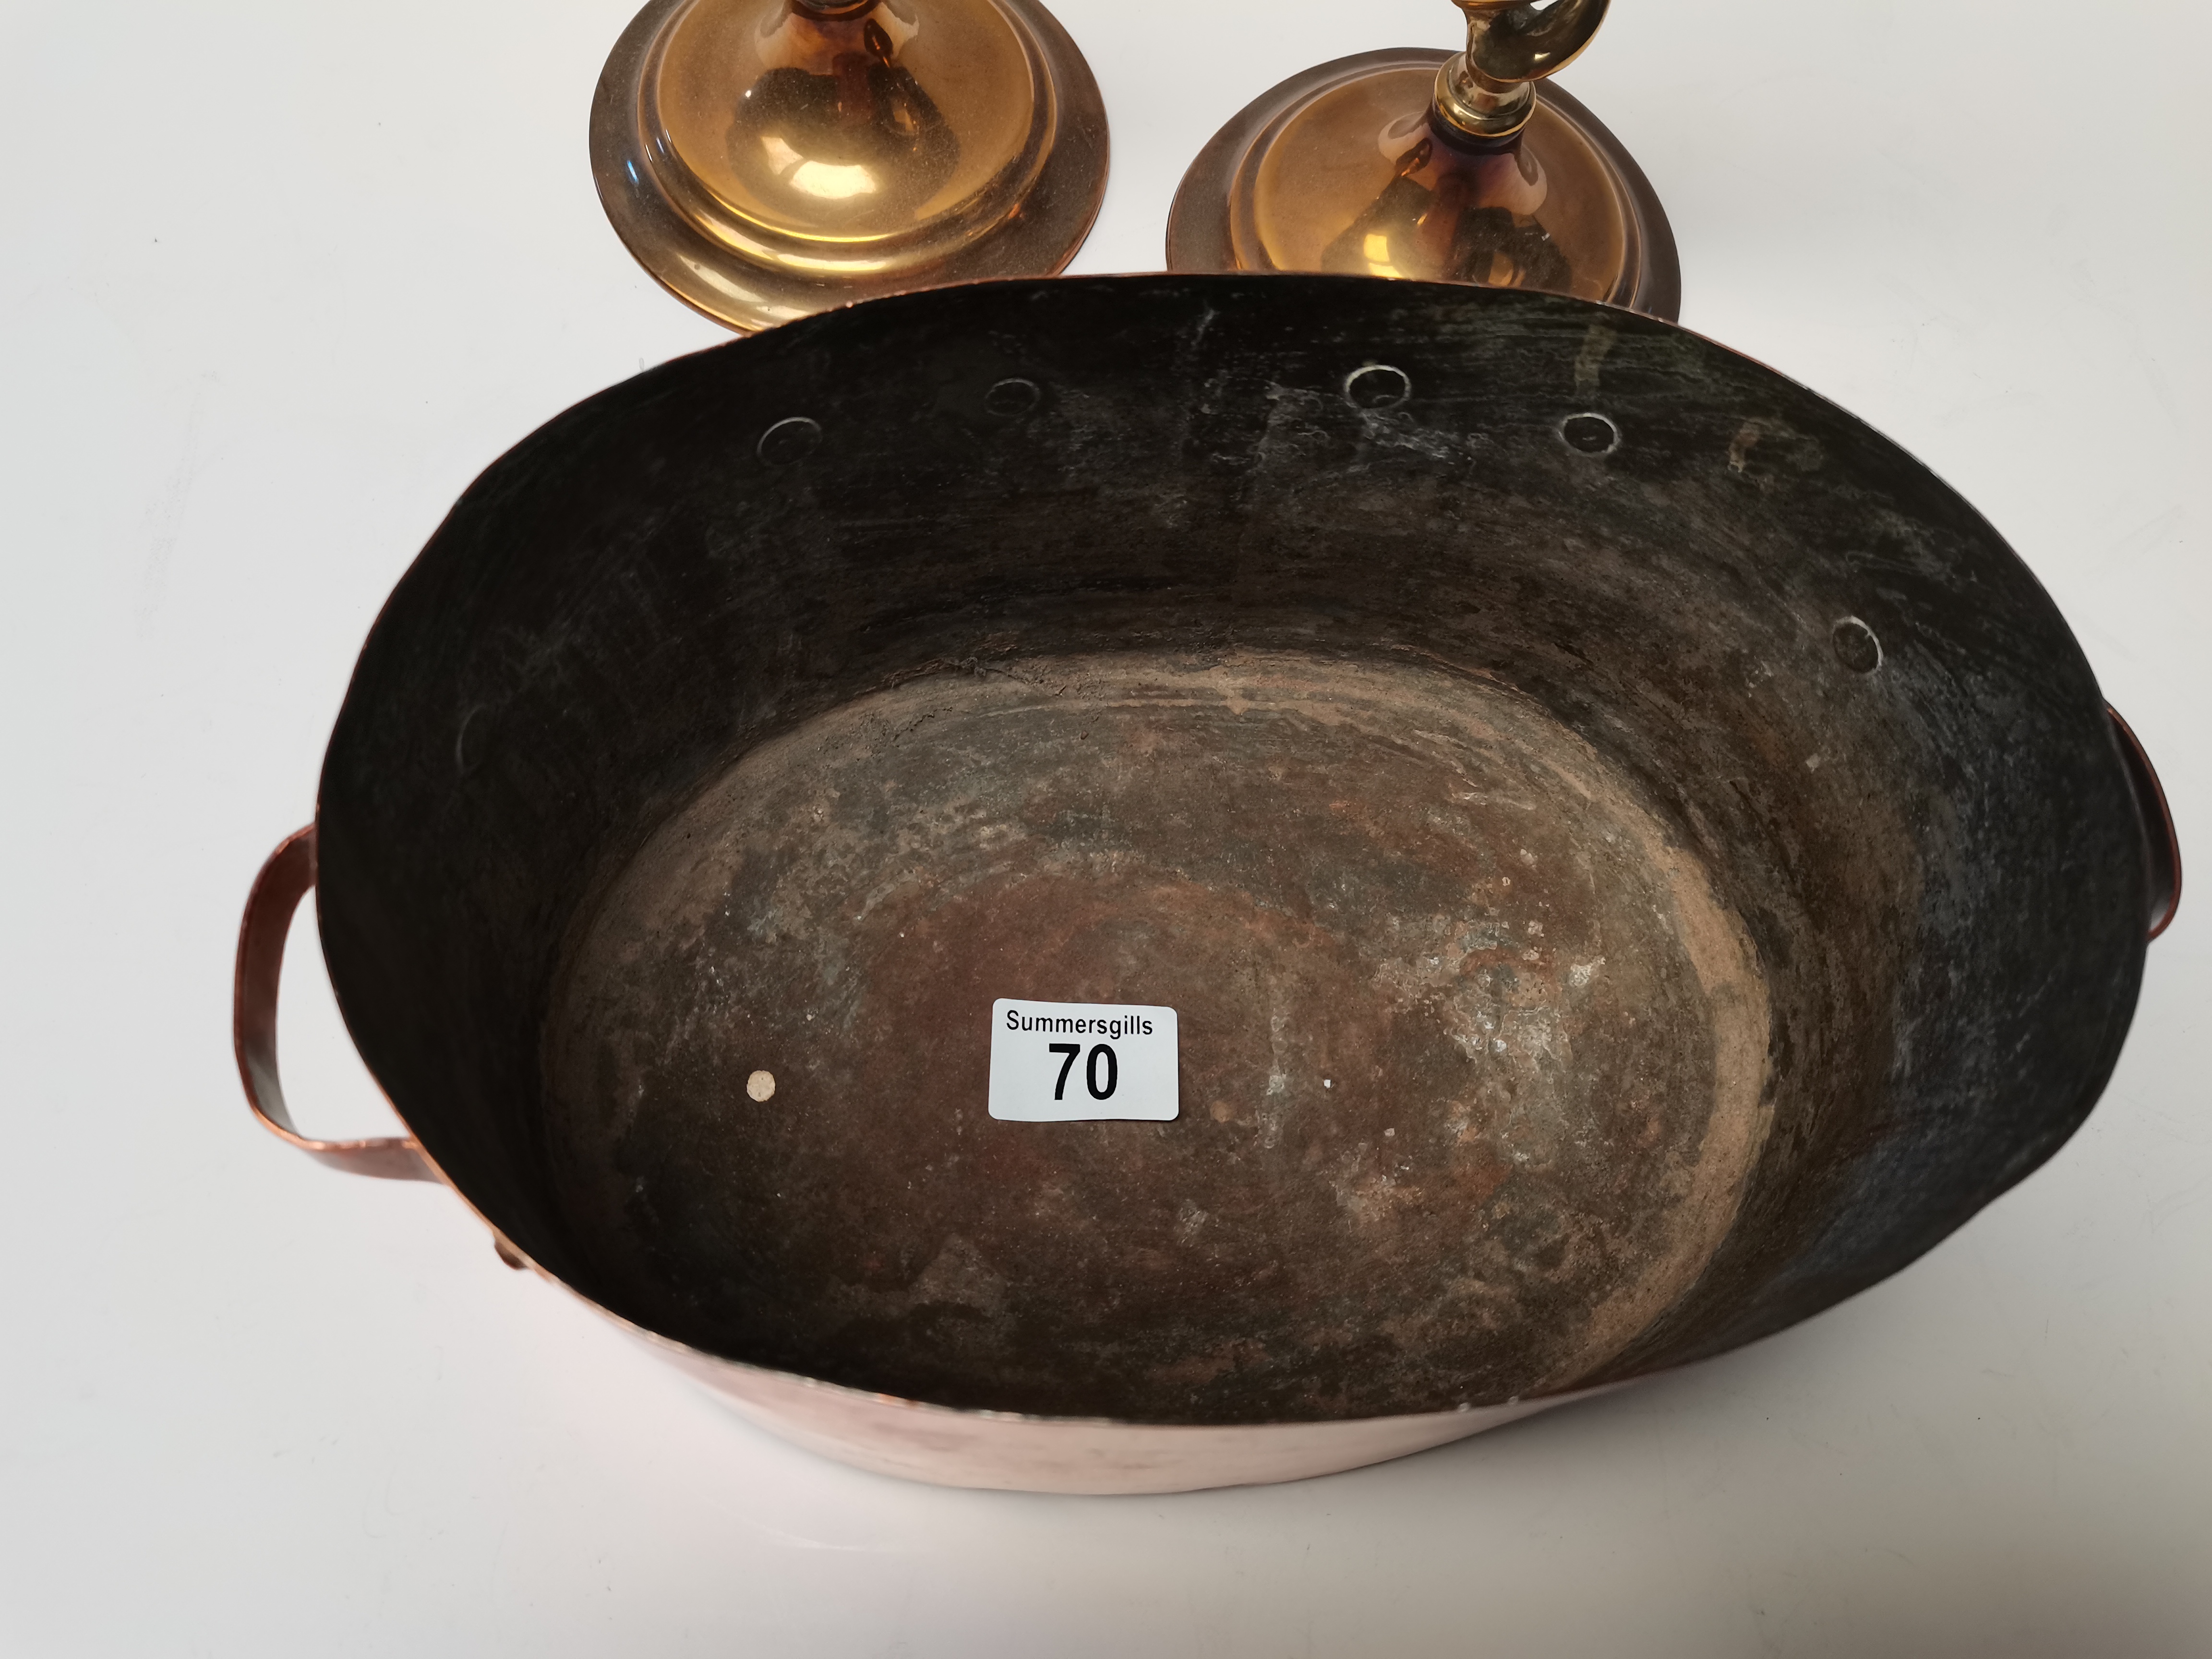 French Copper Sauté Pan 25cm x 17cm plus 2 brass candle sticks - Image 6 of 7